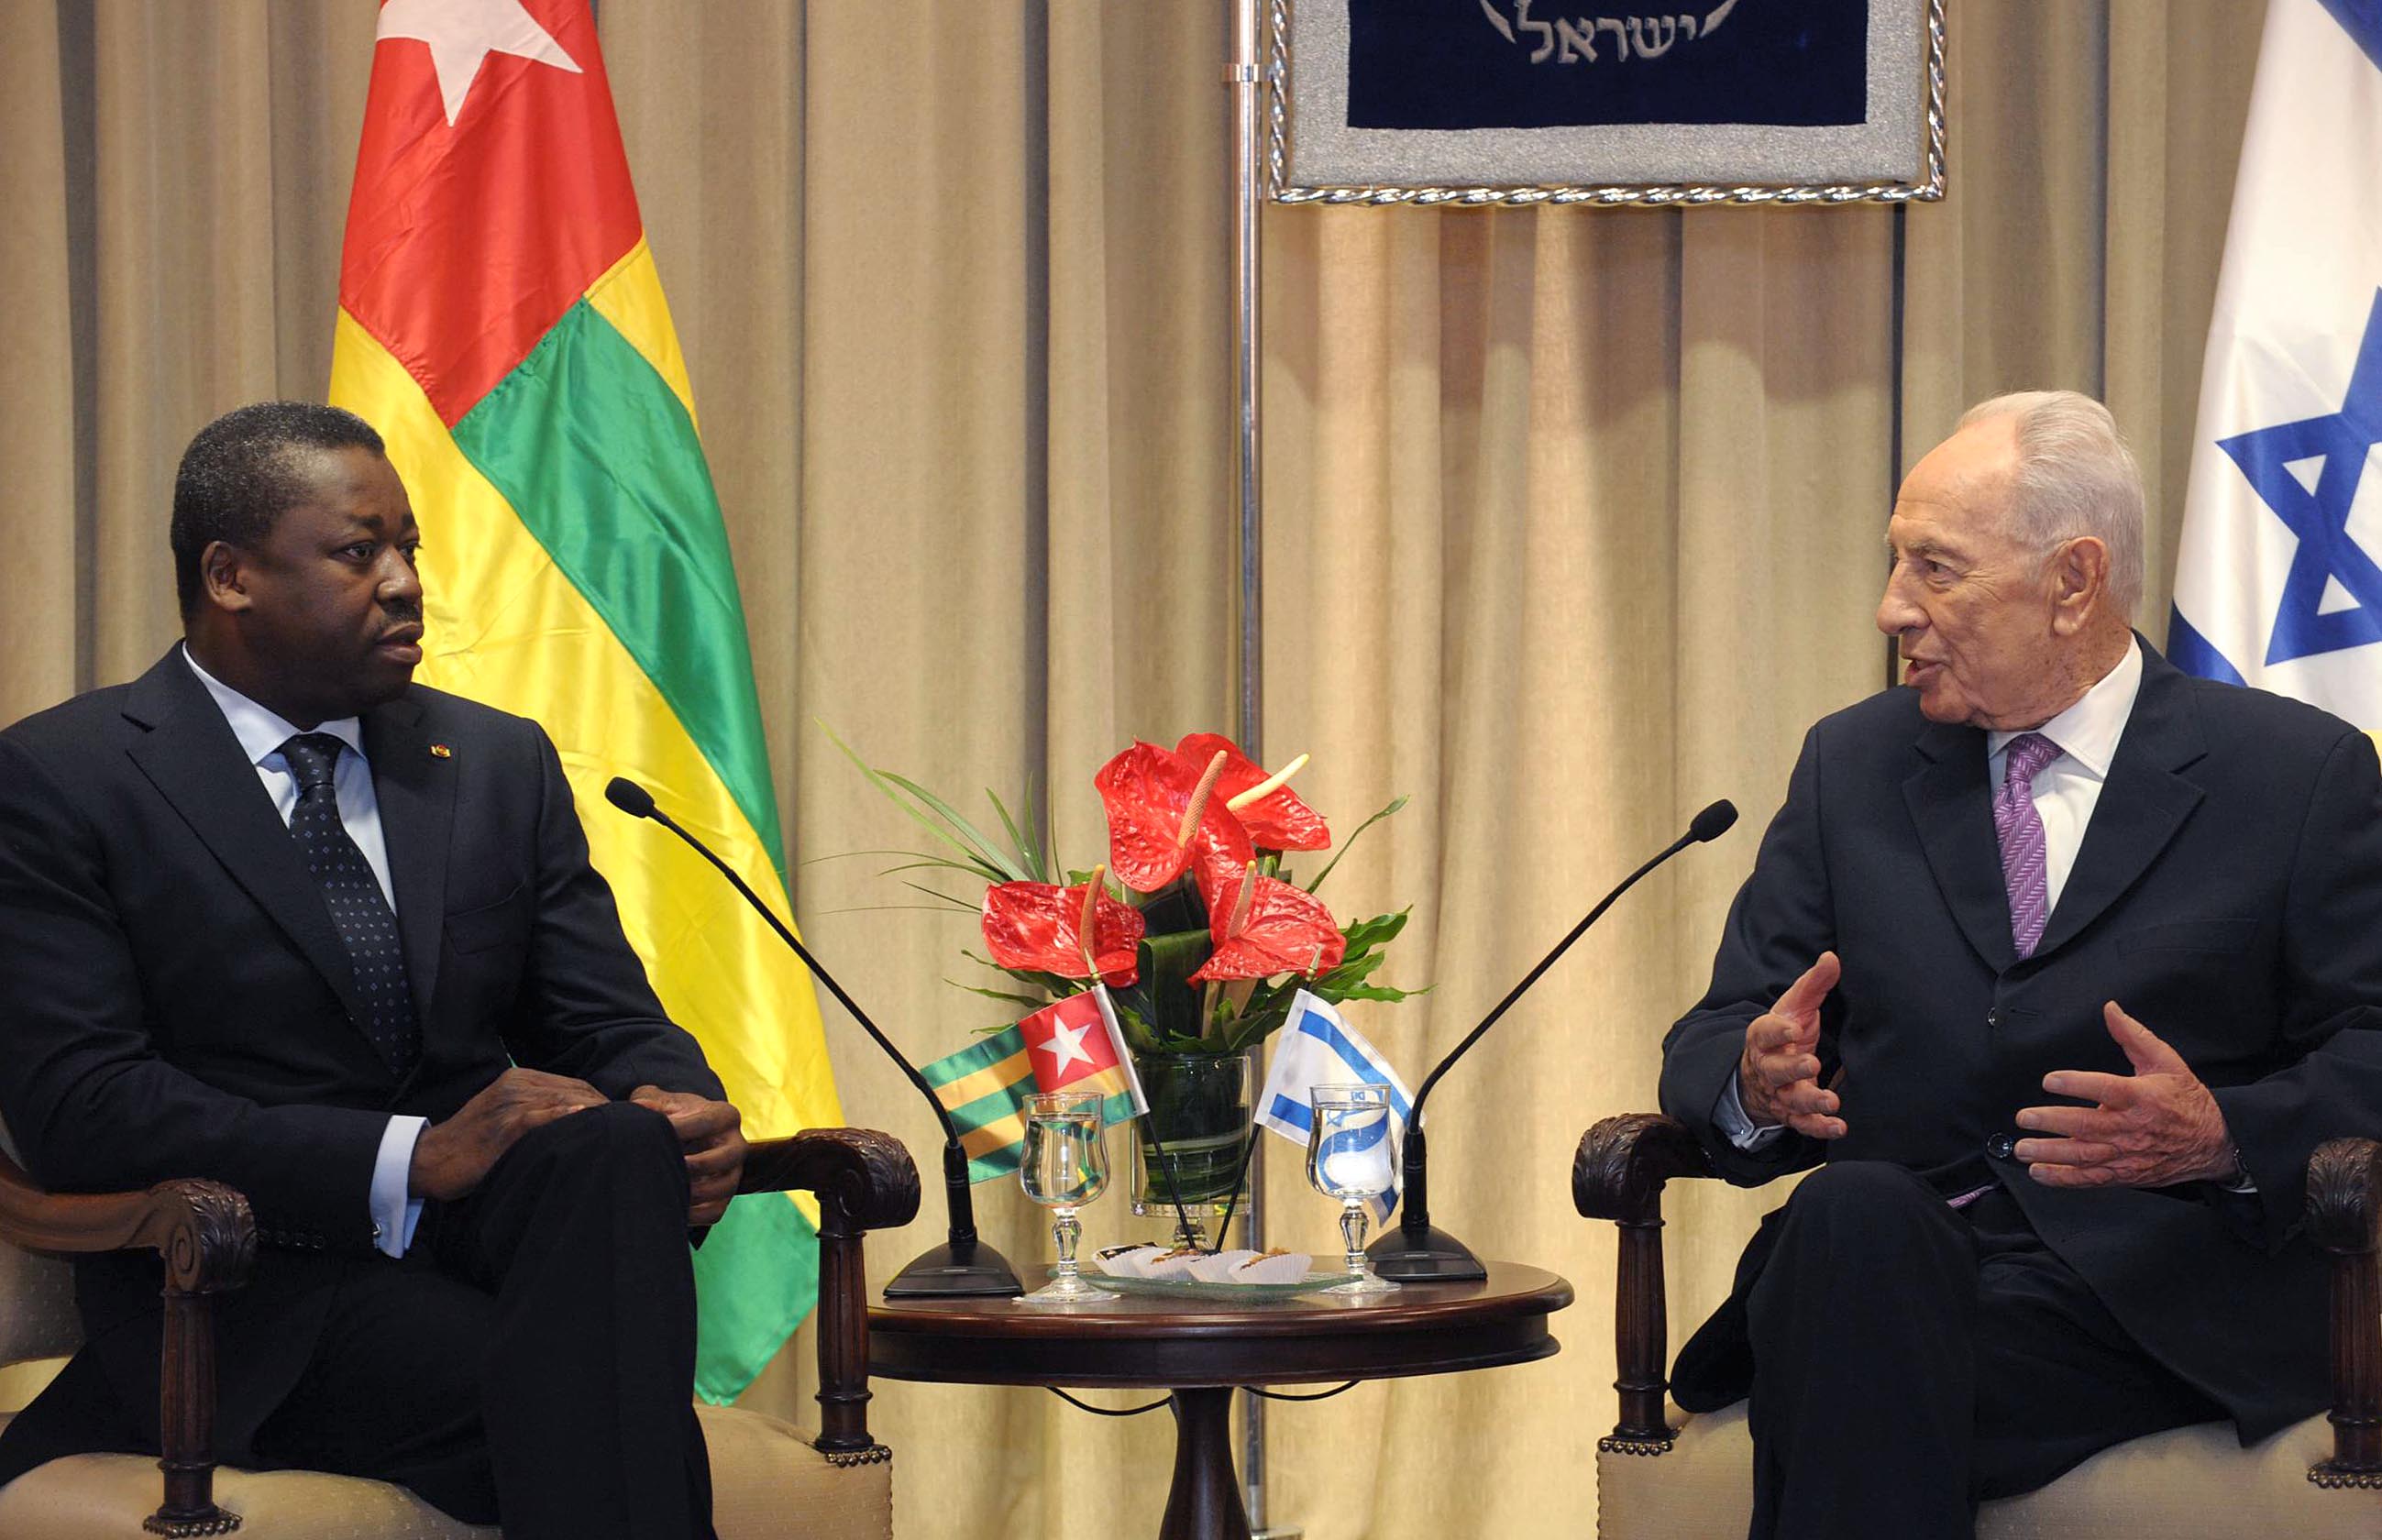 נשיא טוגו לפרס: "נתמוך בכם גם במועצת הביטחון"